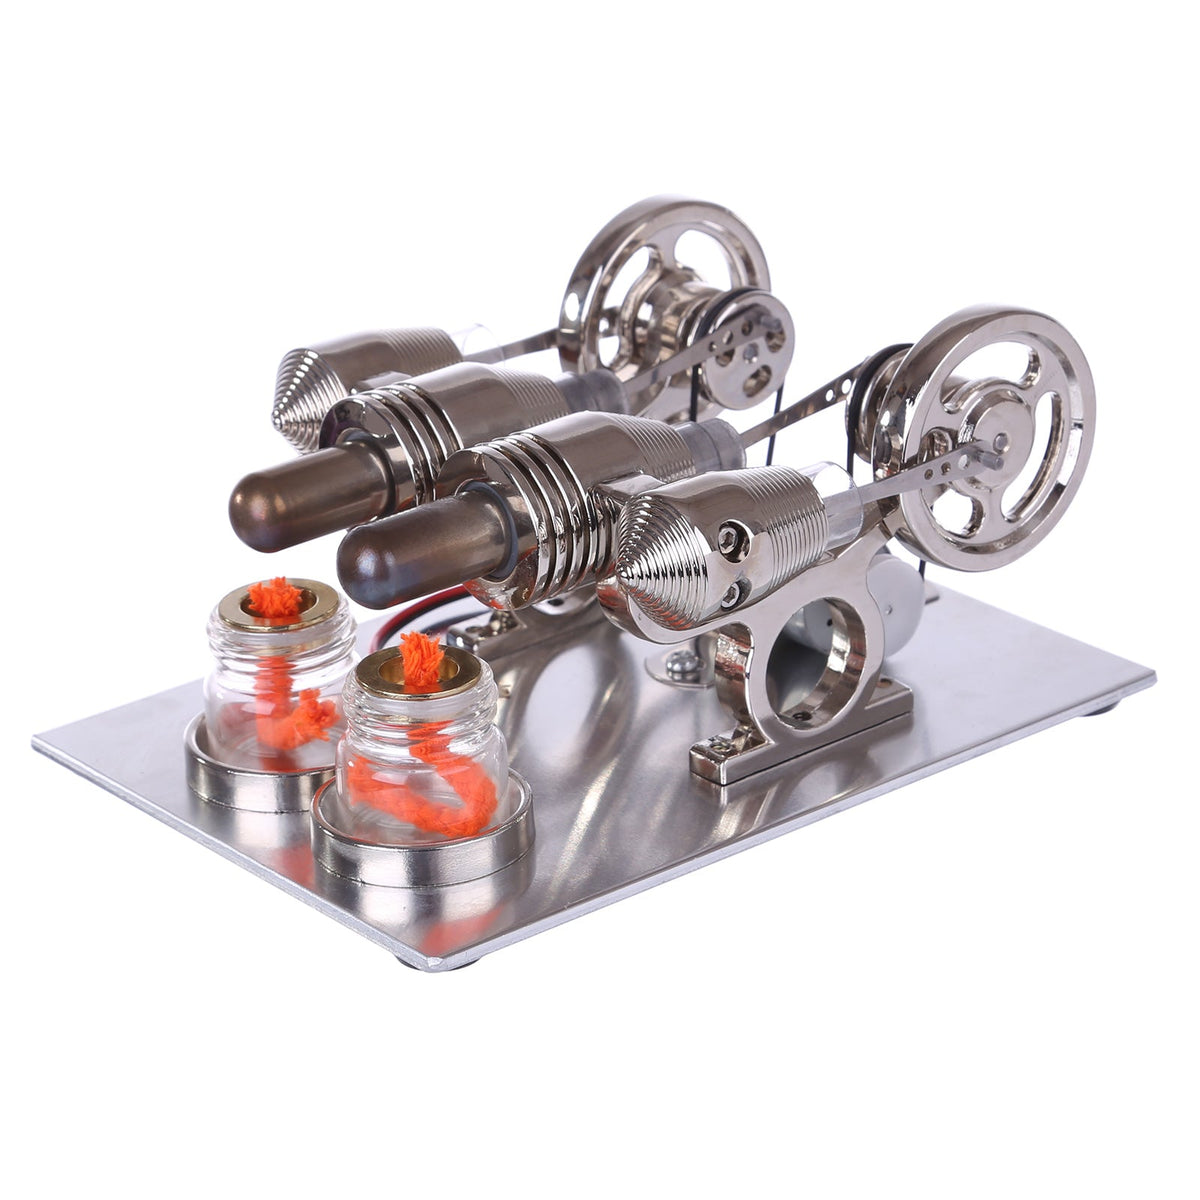 2 Cylinder Hot Air Stirling Engine Generator Model with Voltage Digital Display Meter Bulb